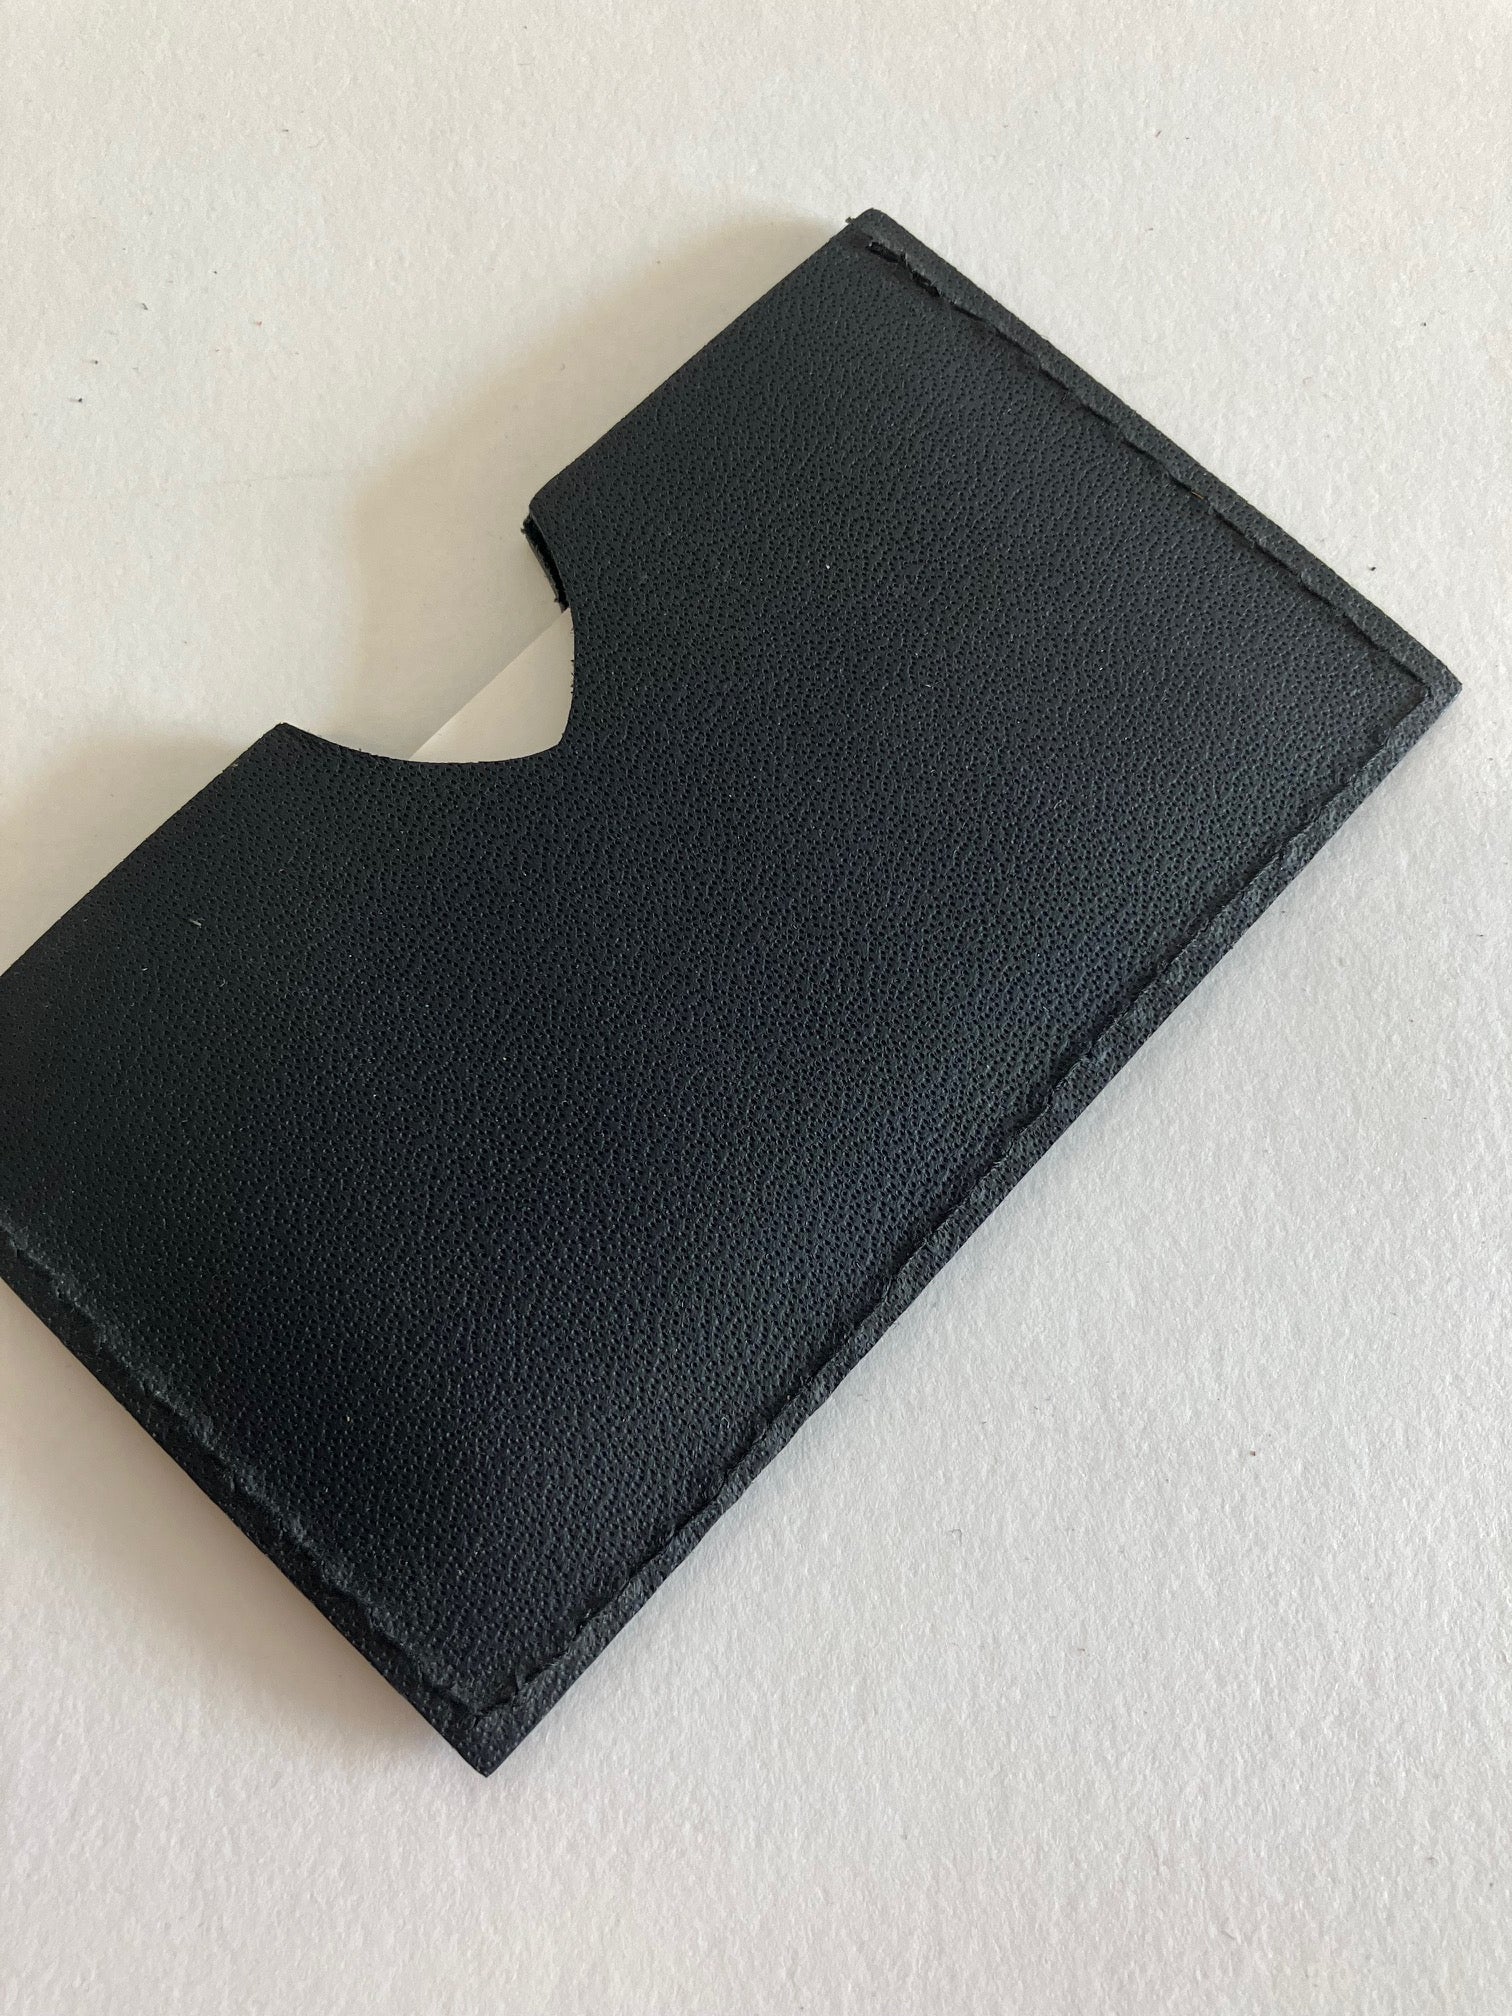 SAMPLE Black veg tanned Leather minimalist cardholders